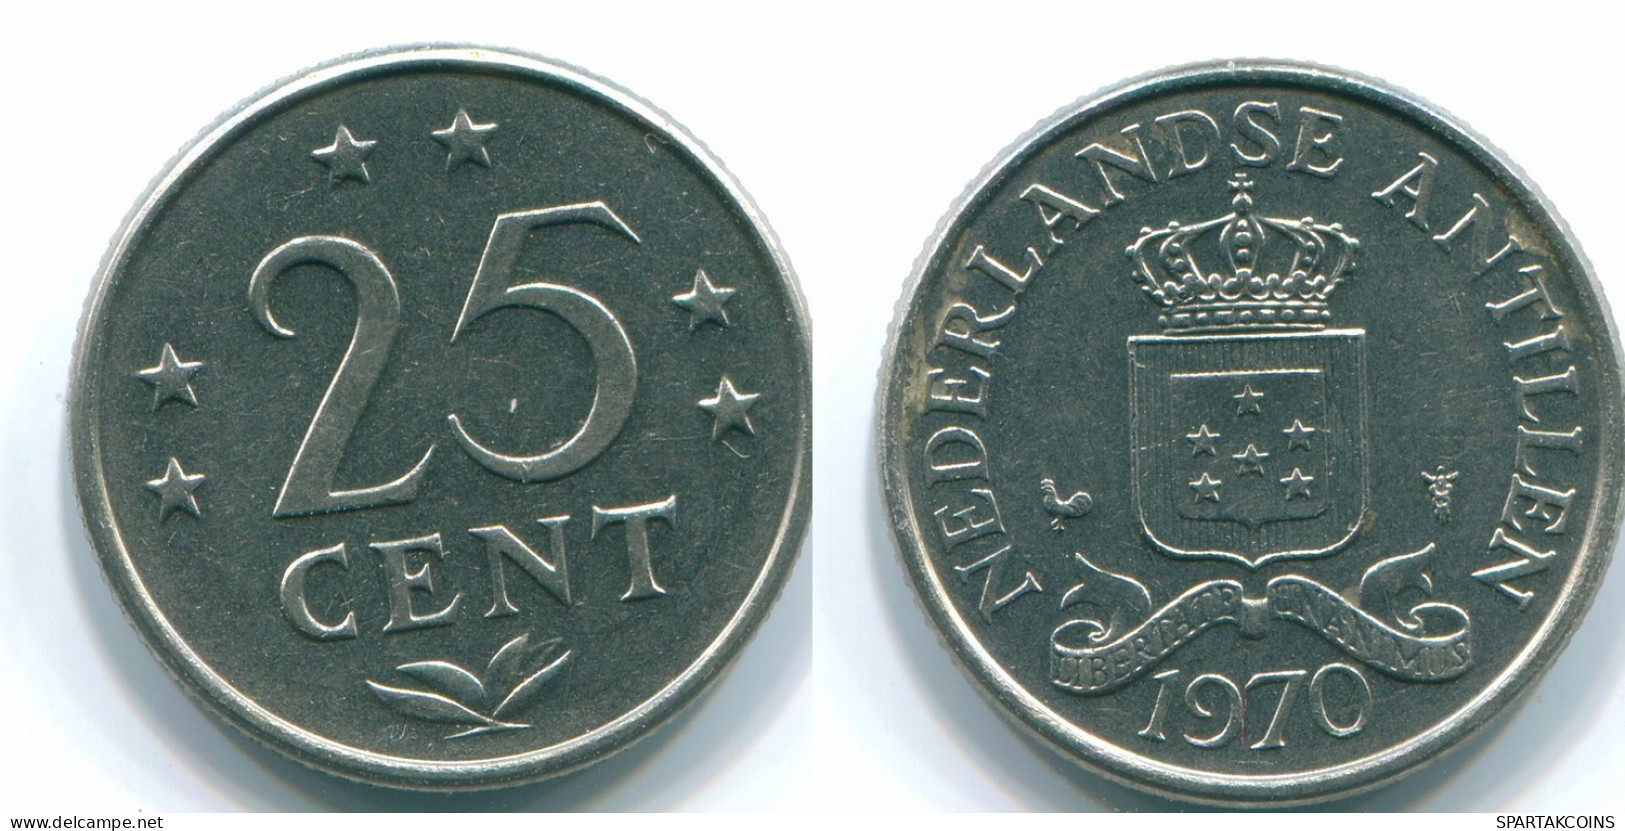 25 CENTS 1970 NETHERLANDS ANTILLES Nickel Colonial Coin #S11450.U.A - Niederländische Antillen